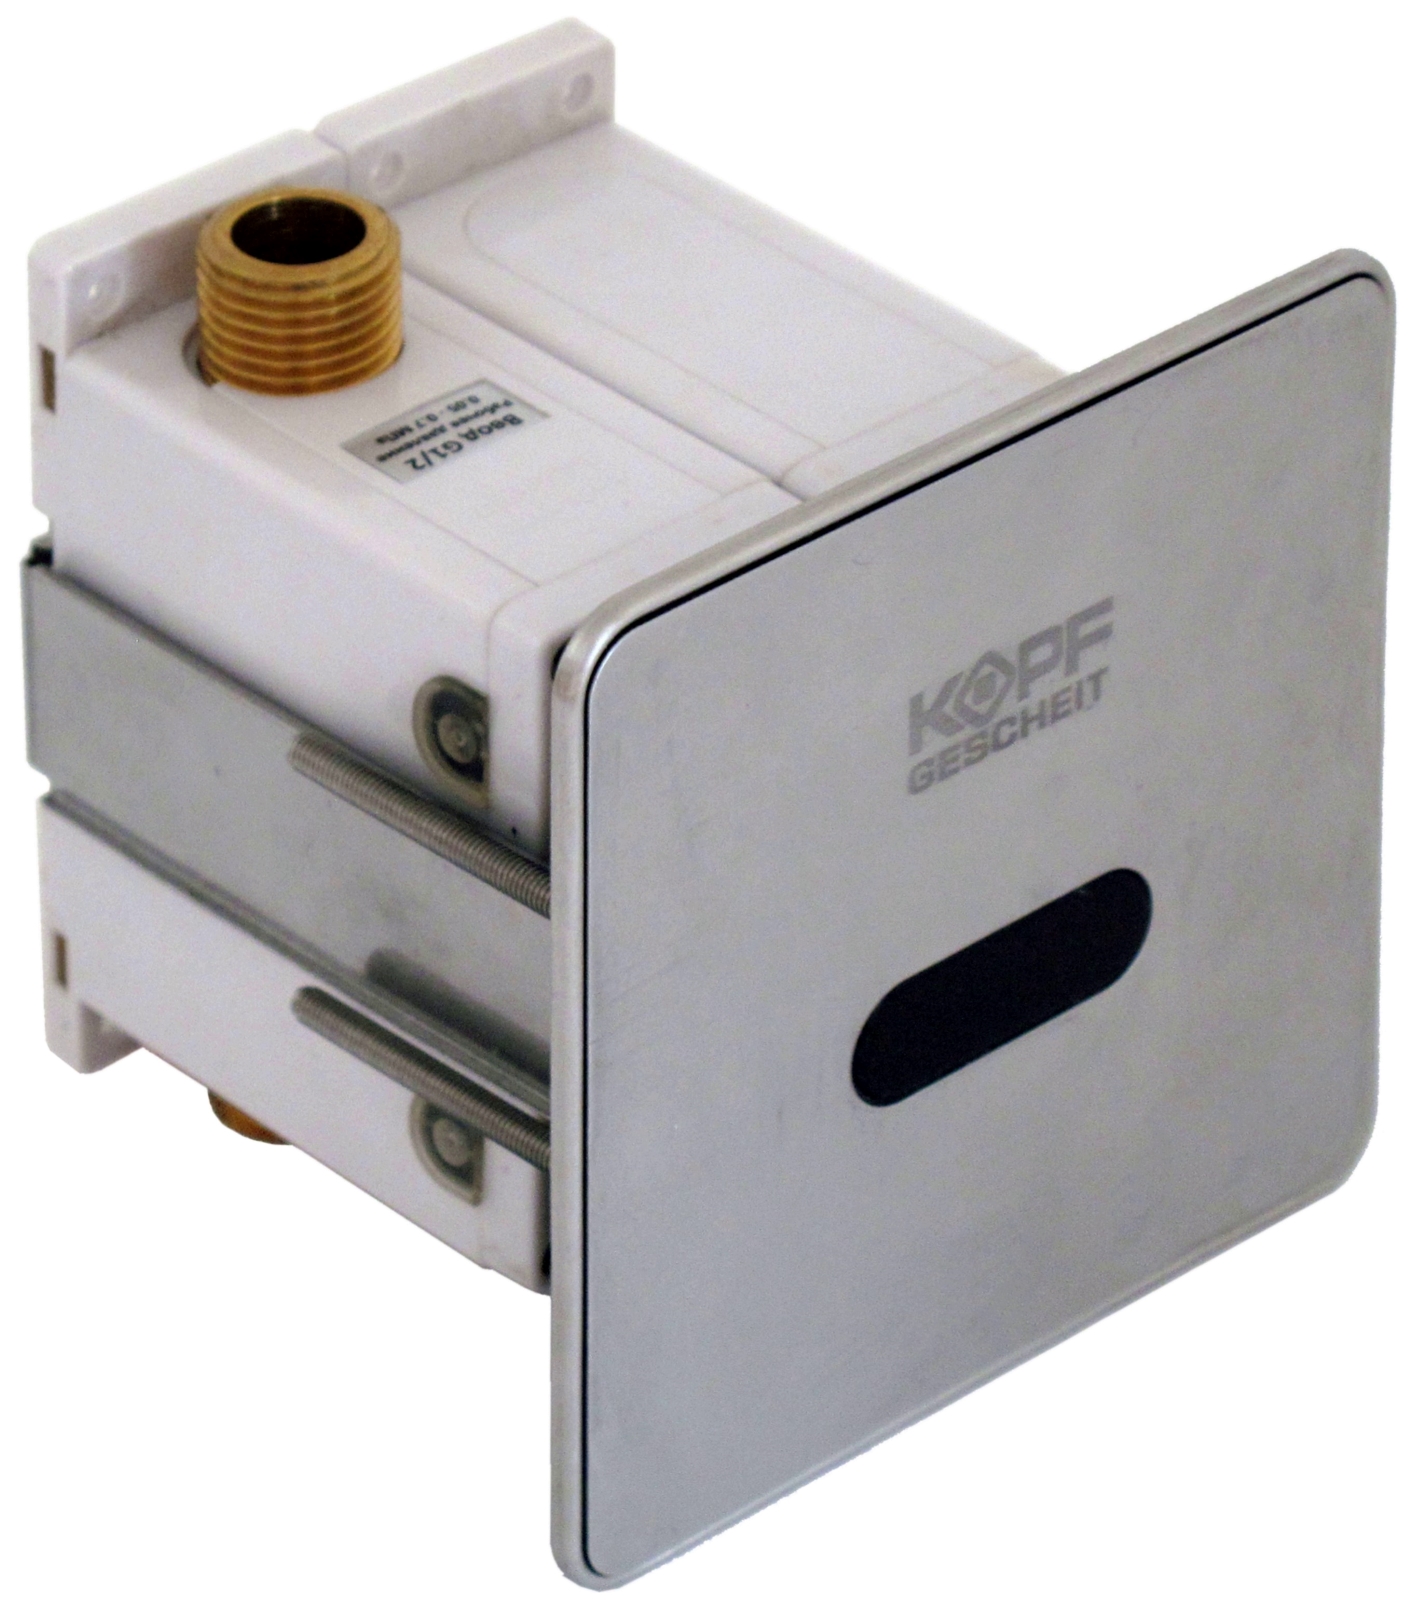 Automatic sensor faucet KR5444DC